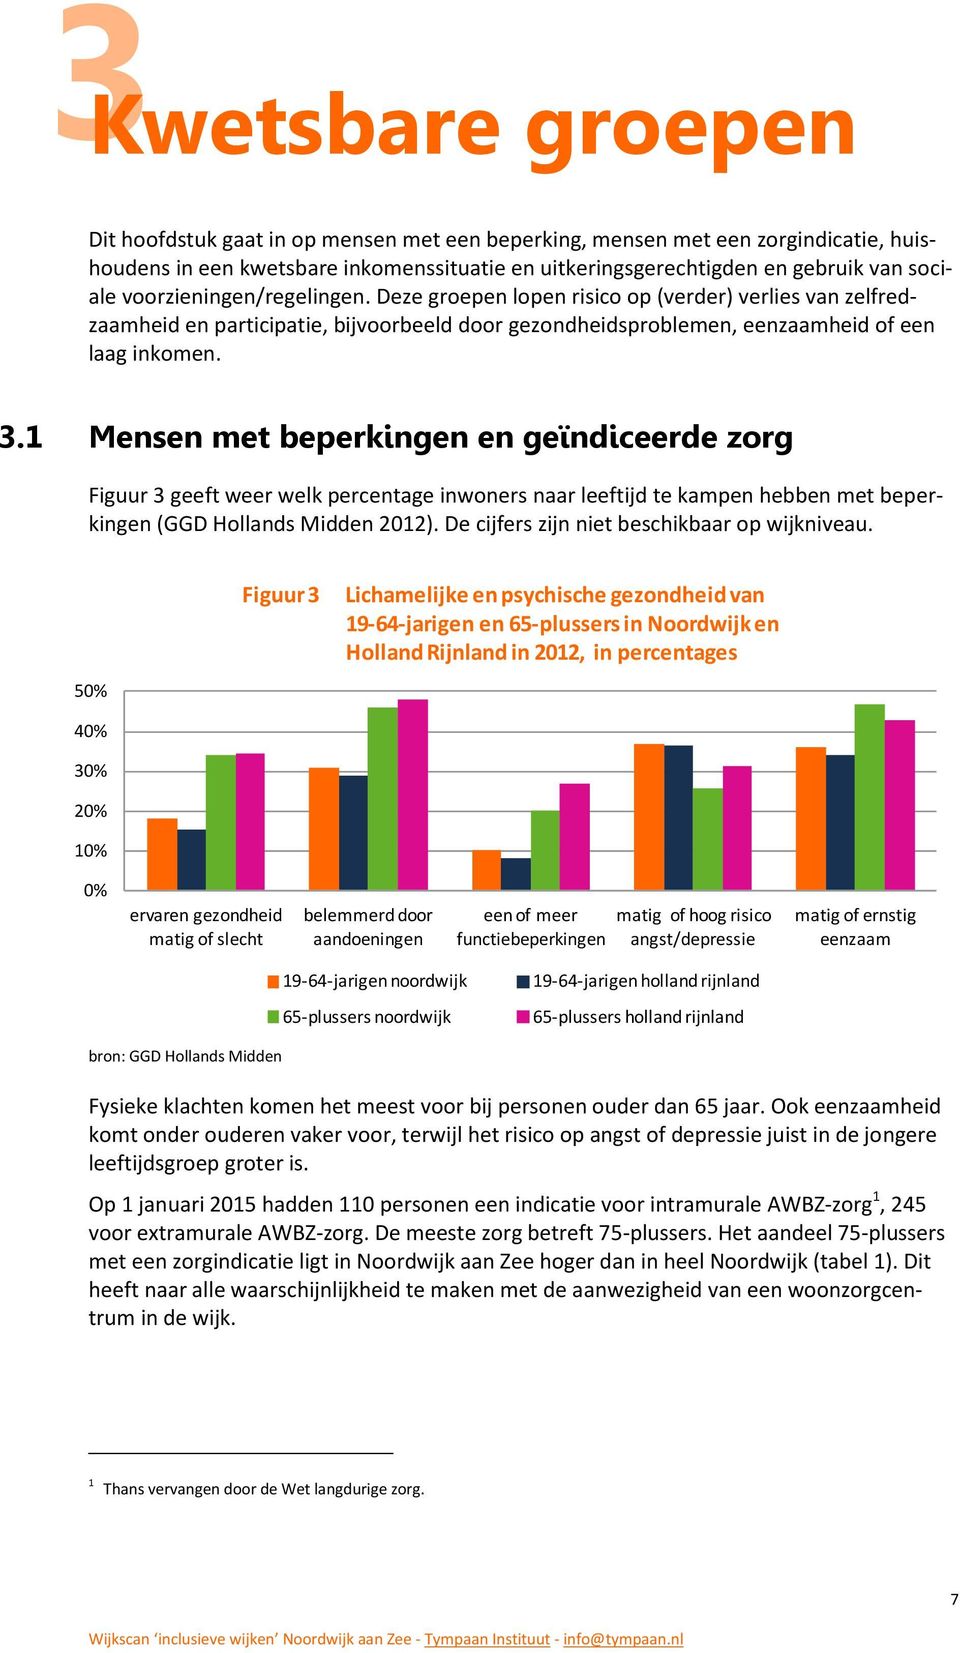 1 Mensen met beperkingen en geïndiceerde zorg Figuur 3 geeft weer welk percentage inwoners naar leeftijd te kampen hebben met beperkingen (GGD Hollands Midden 2012).